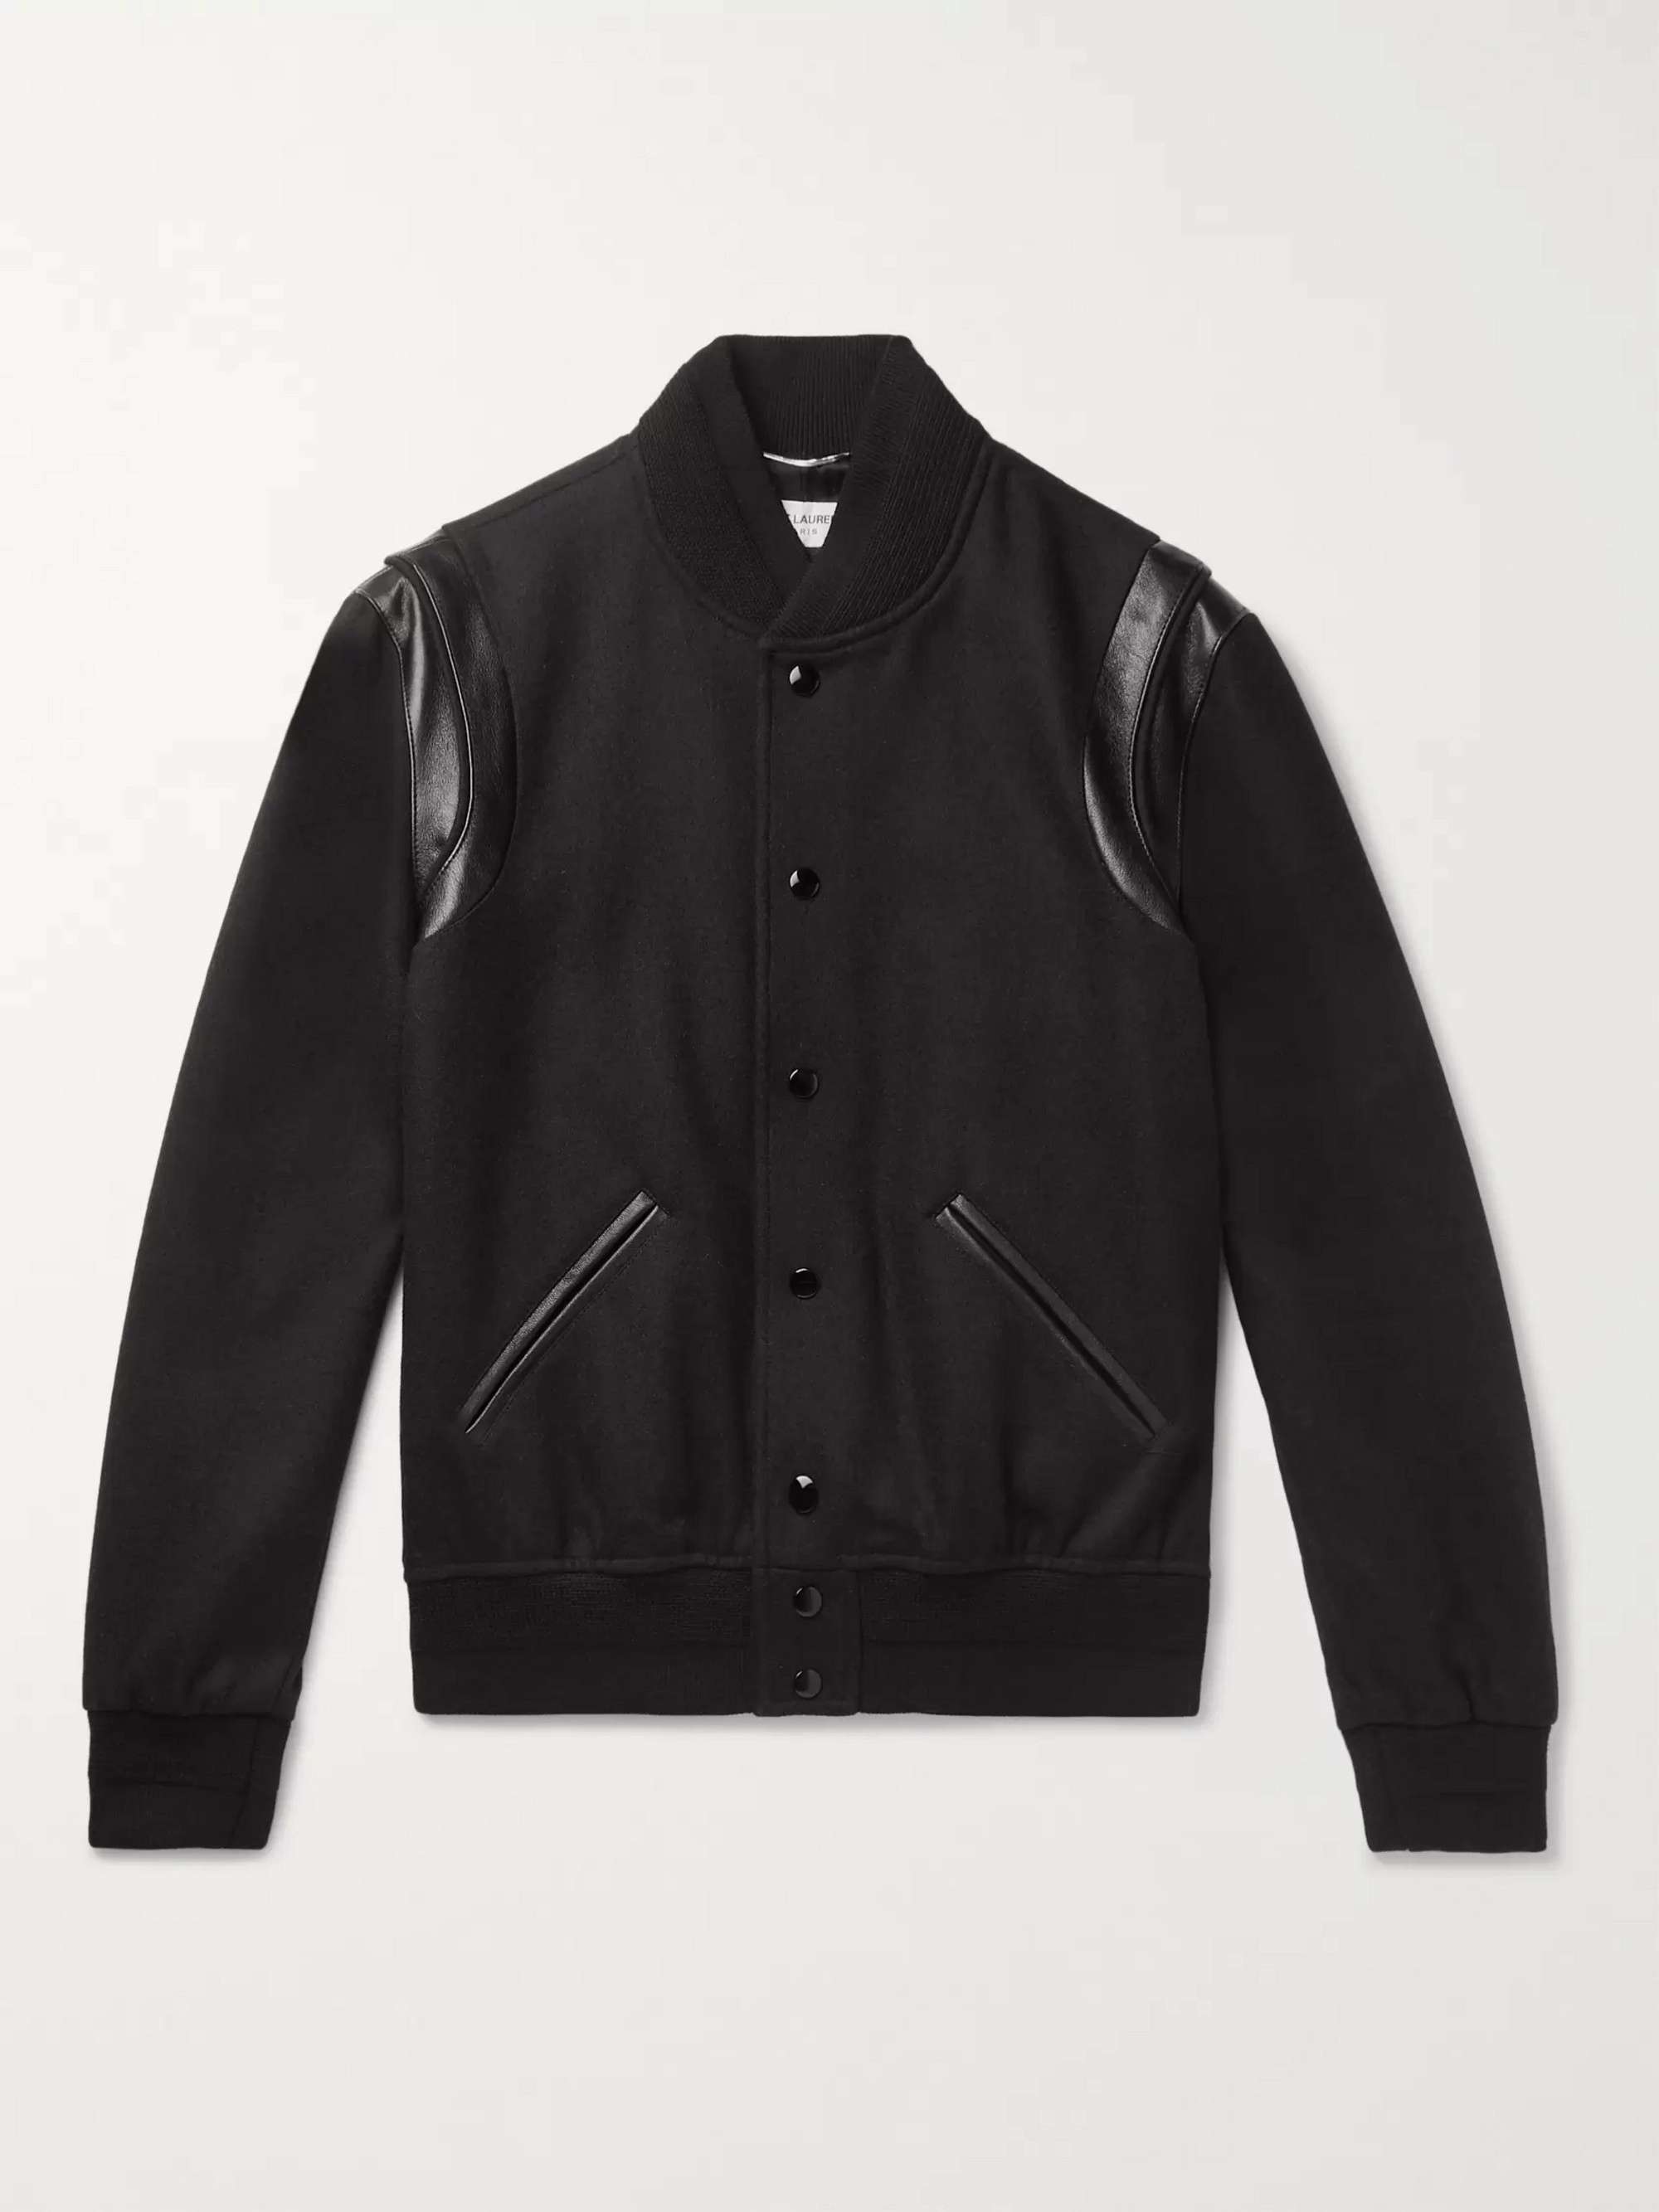 Saint Laurent Men, Teddy Varsity Jacket, Black, S, Jackets, Wool